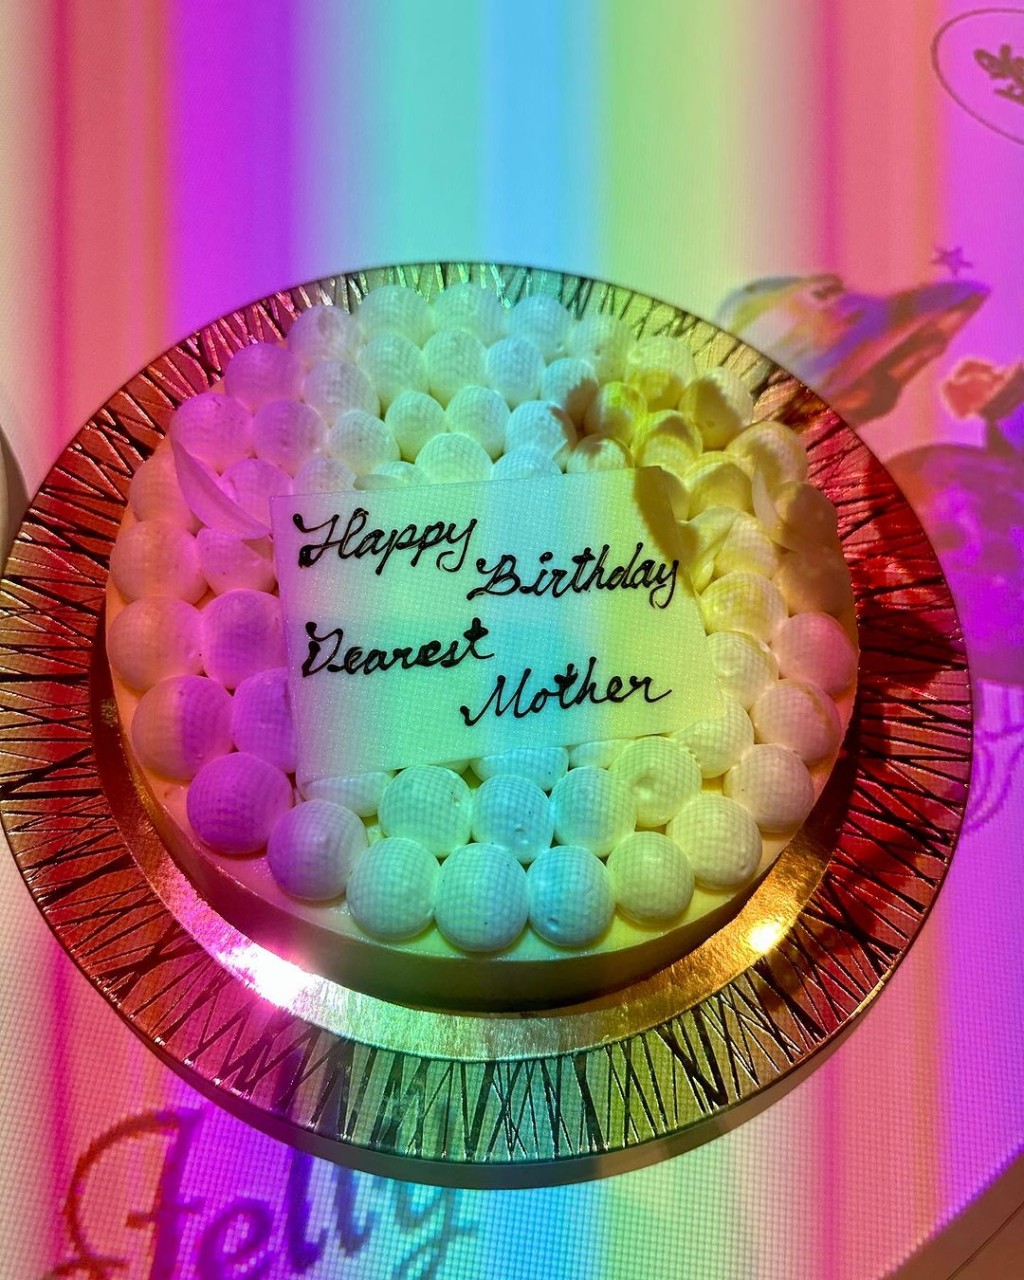 謝玲玲生日連切個蛋糕。